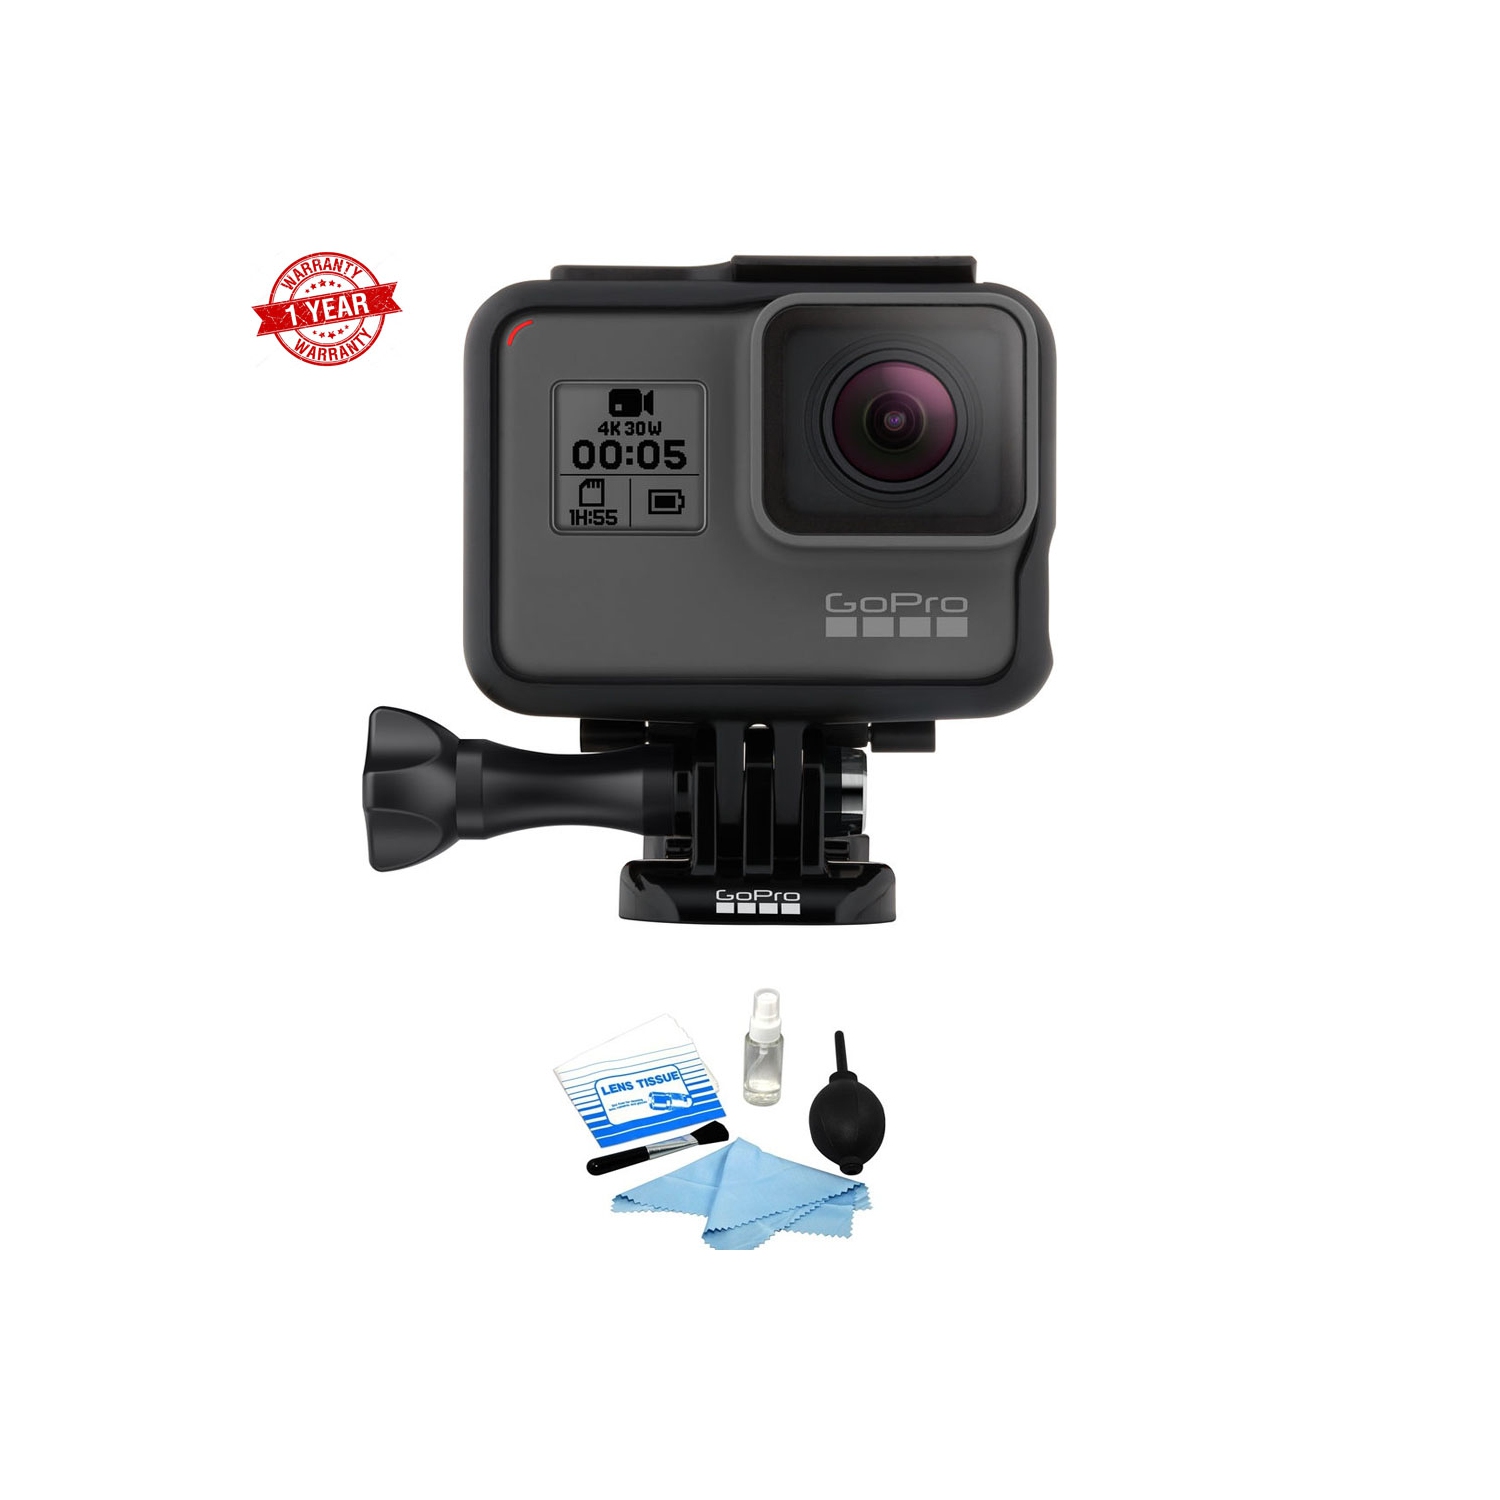 GoPro HERO5 Black + Cleaning Kit + Warranty - US Version w/ Seller Warranty